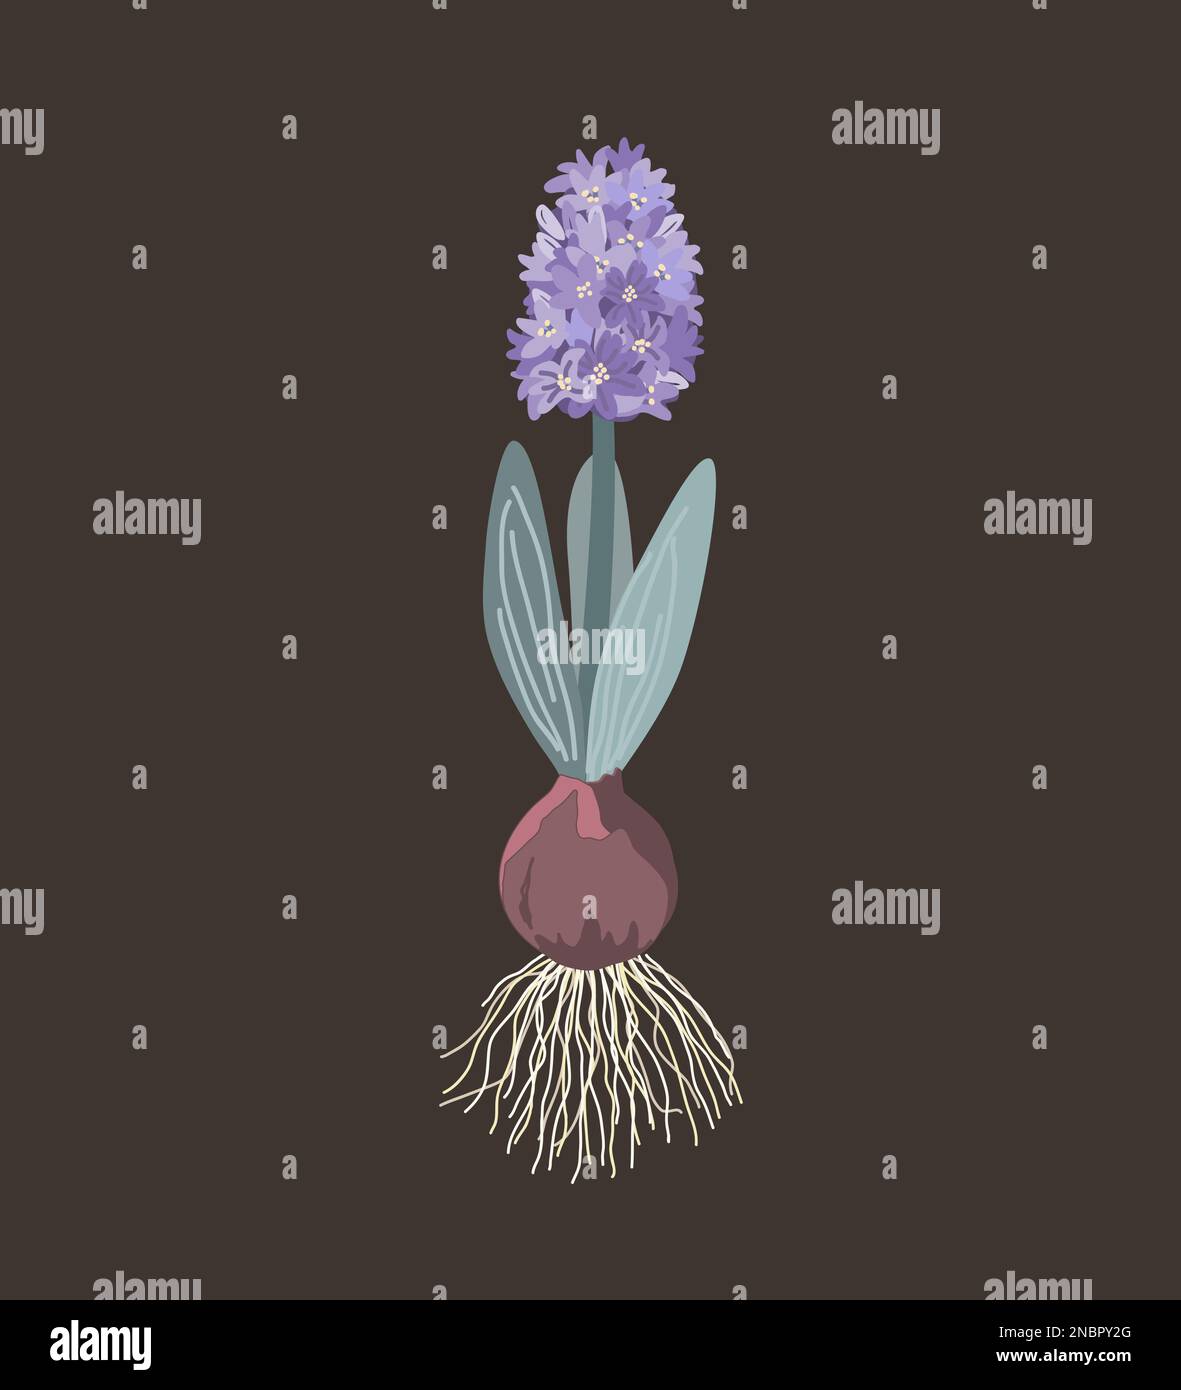 Giacinto viola con cipolla, radici, foglie e fiori isolati su fondo scuro. Illustrazione vettoriale Illustrazione Vettoriale